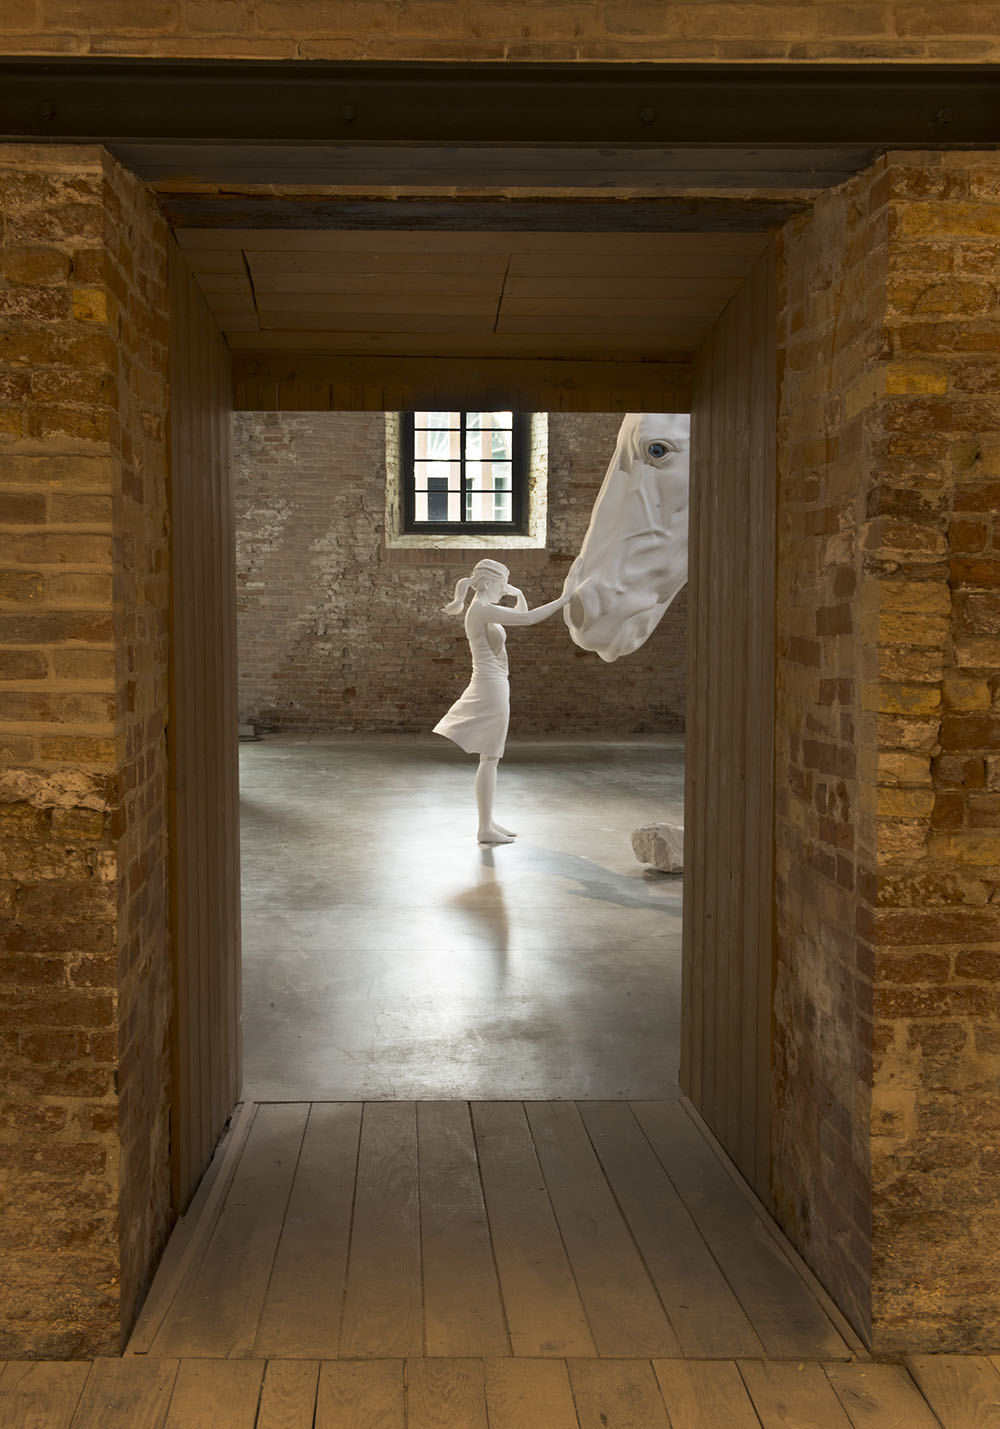 Скульптурная инсталляция от Клаудии Фонтес на 57 биеннале в Венеции